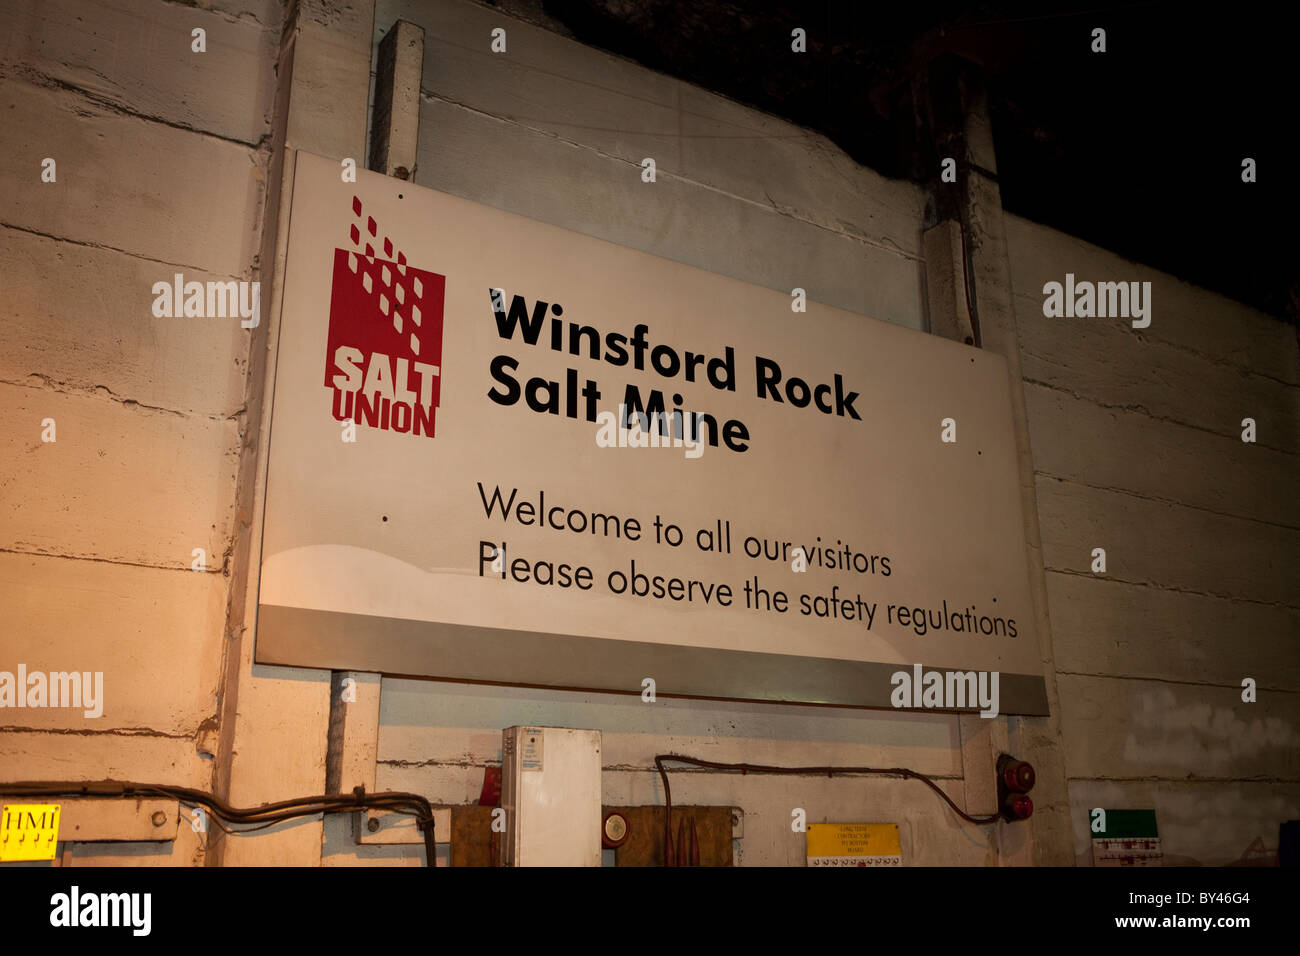 Winsford Rock Miniera di Sale Cheshire Regno Unito - sale di pietra per la costruzione di strade in inverno Foto Stock